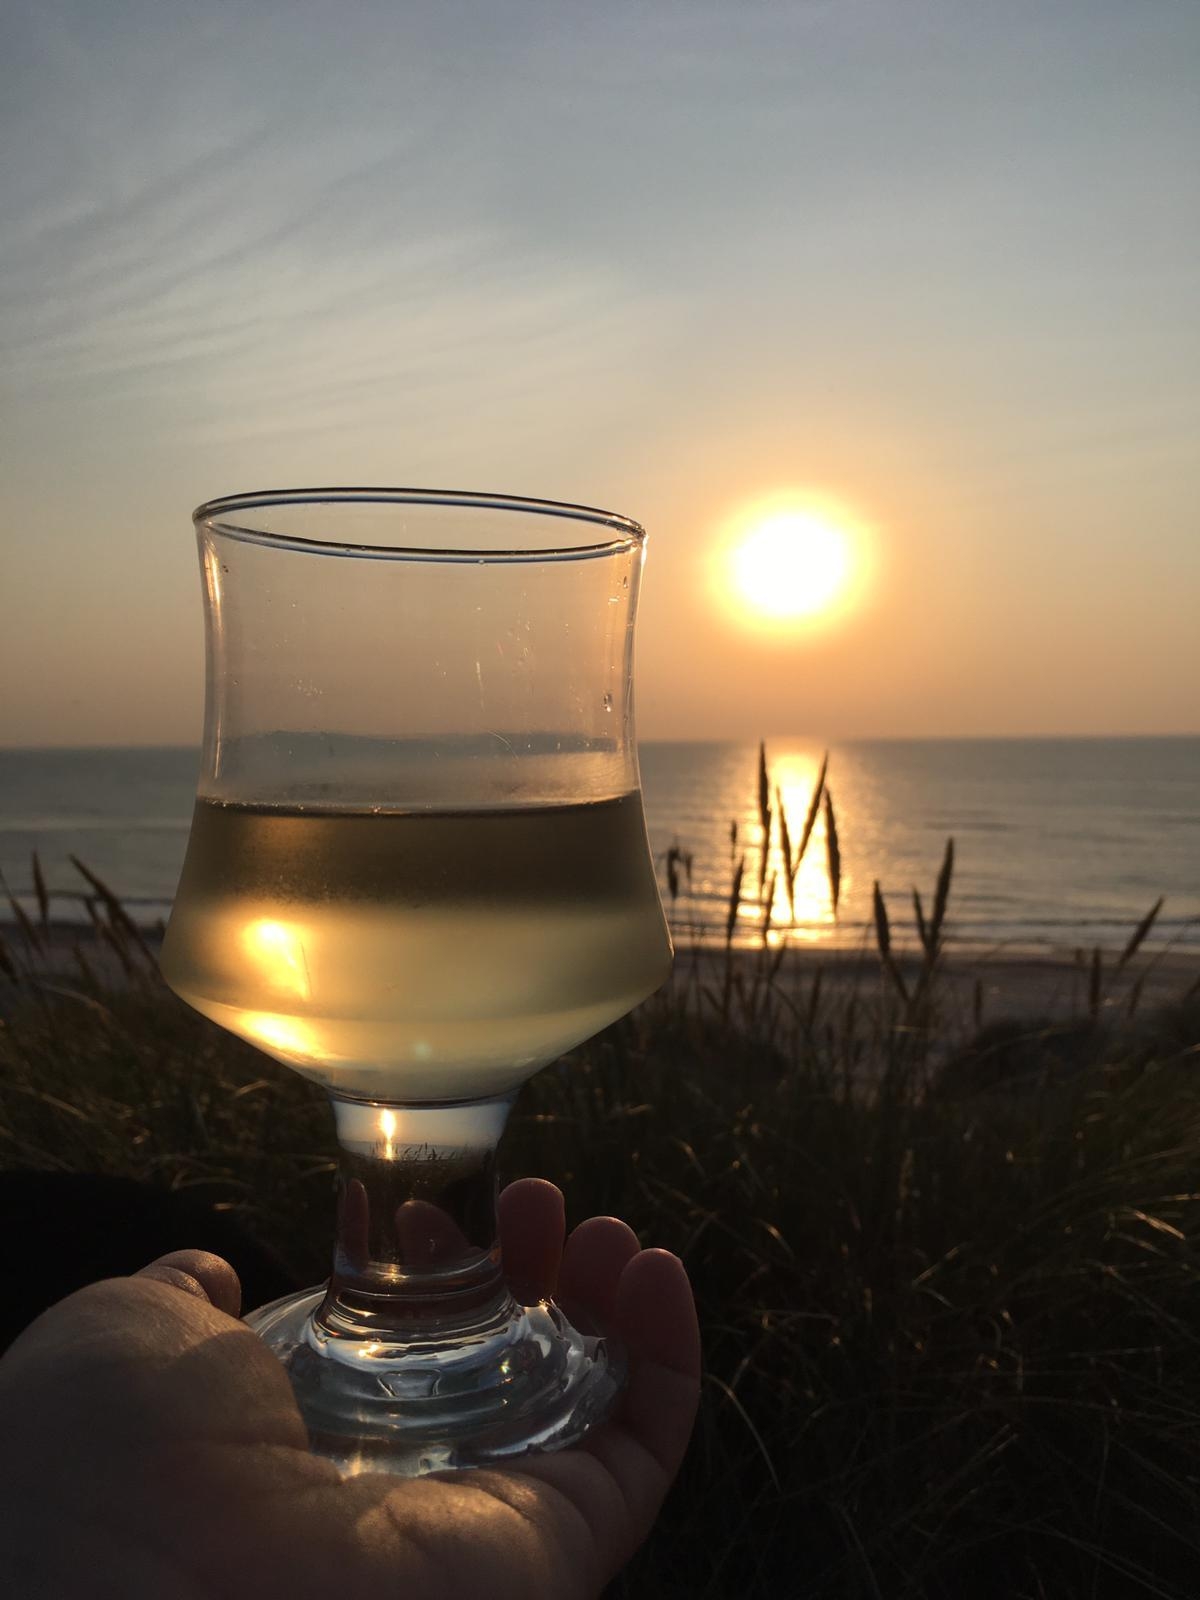 #Foodchallenge  #Lieblingsdrink
Ein Glas Wein am Strand